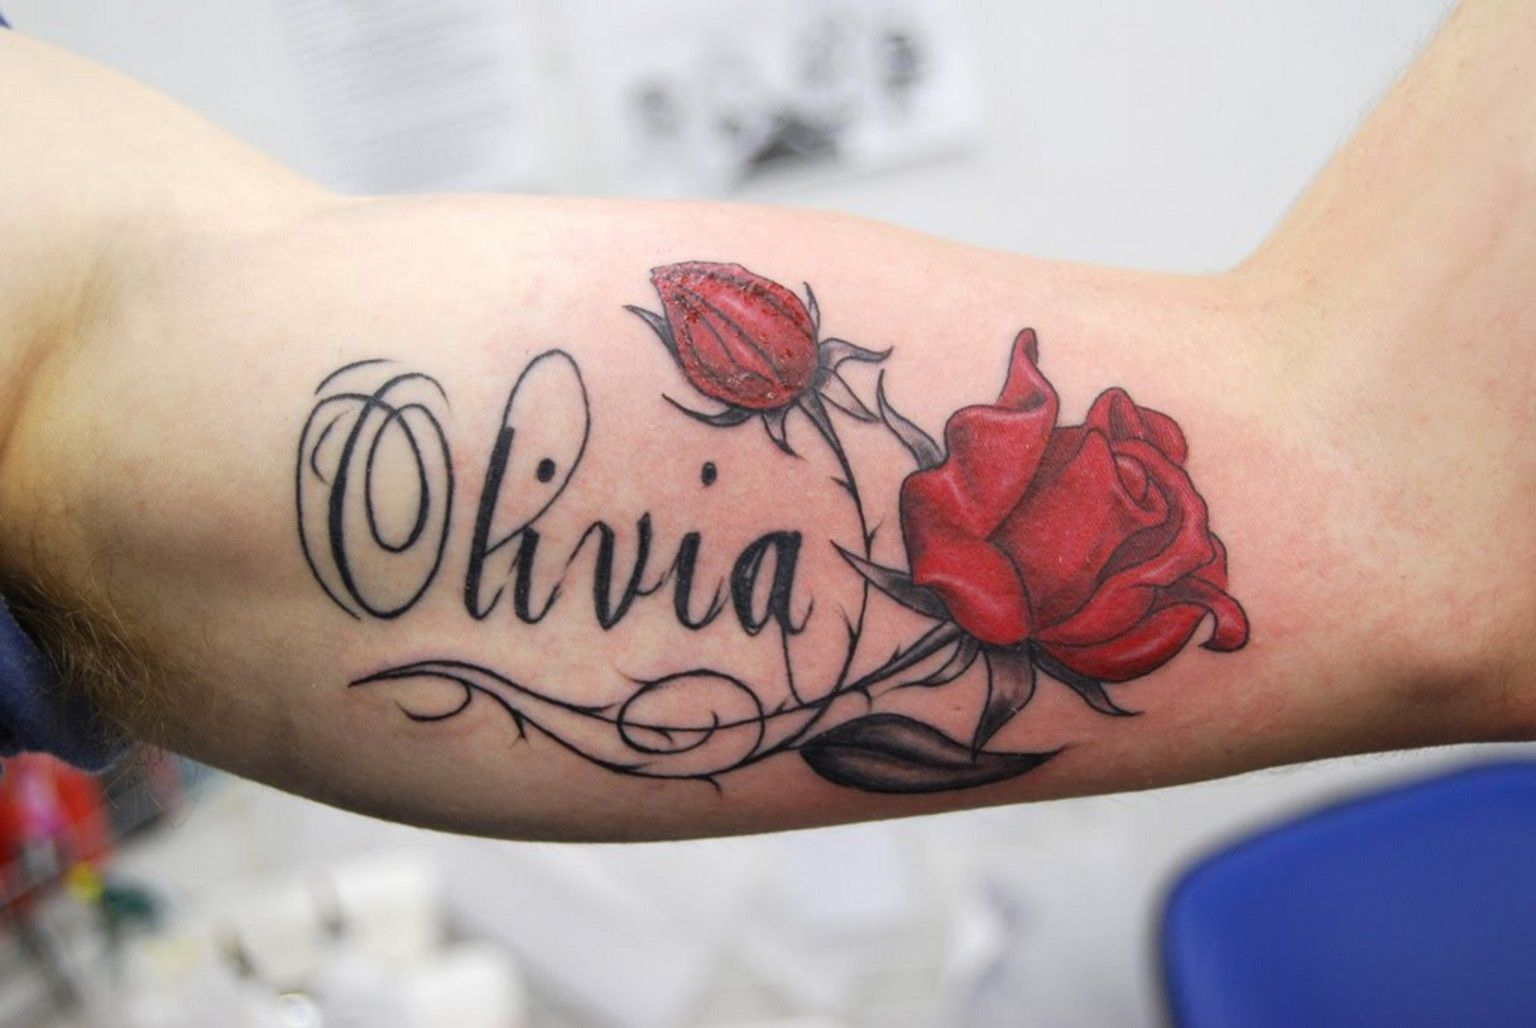 Name Tattoos Name Tattoos On Arm Name Tattoos On Wrist Name Tattoo regarding size 1536 X 1028